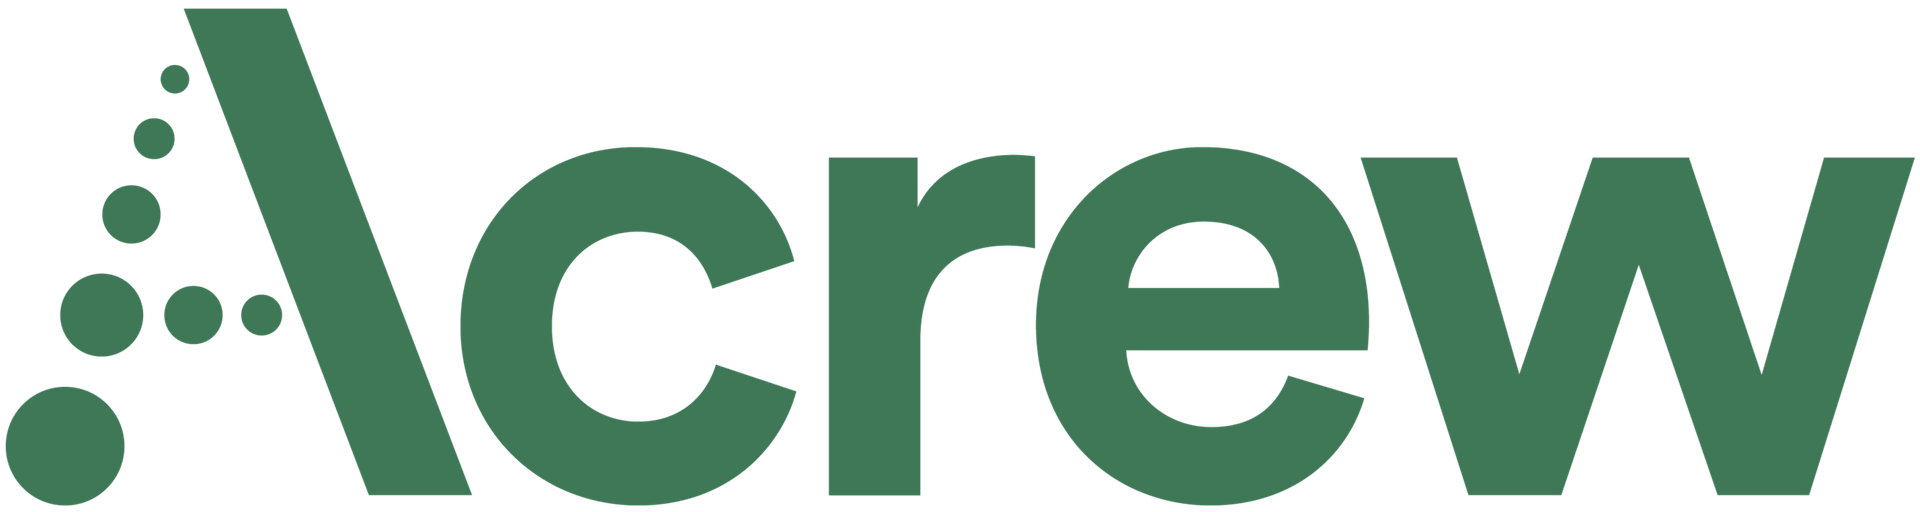 Acrew logo green